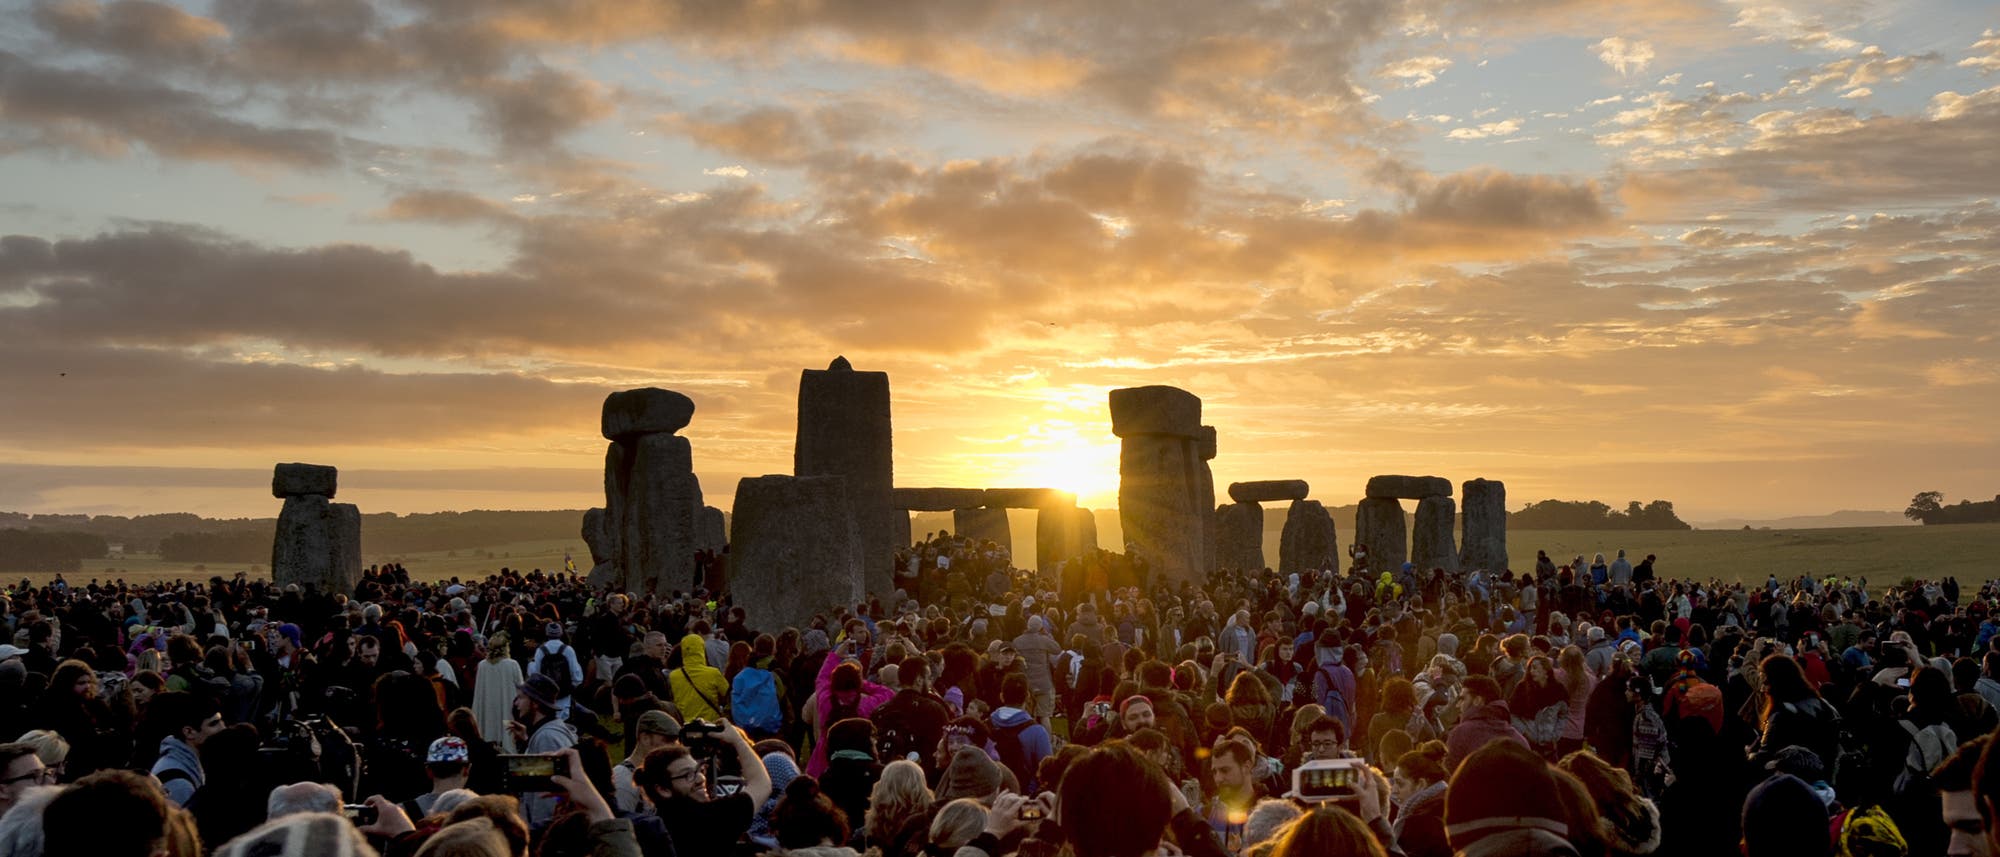 Tausende Menschen haben sich um das Stonehenge-Monument versammelt und machen Bilder vom Sonnenaufgang